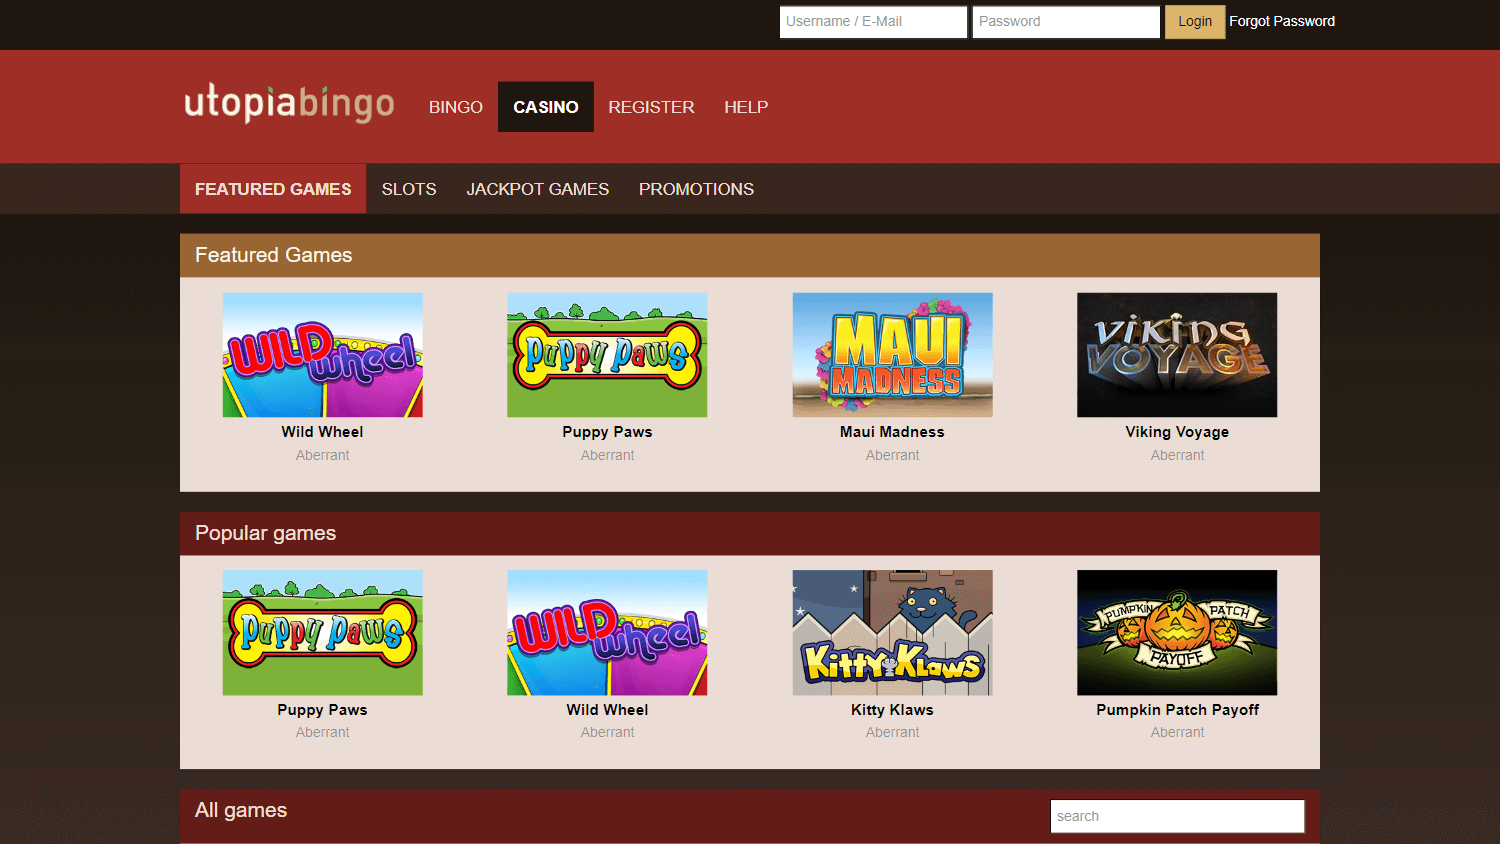 utopia_bingo_casino_game_gallery_desktop